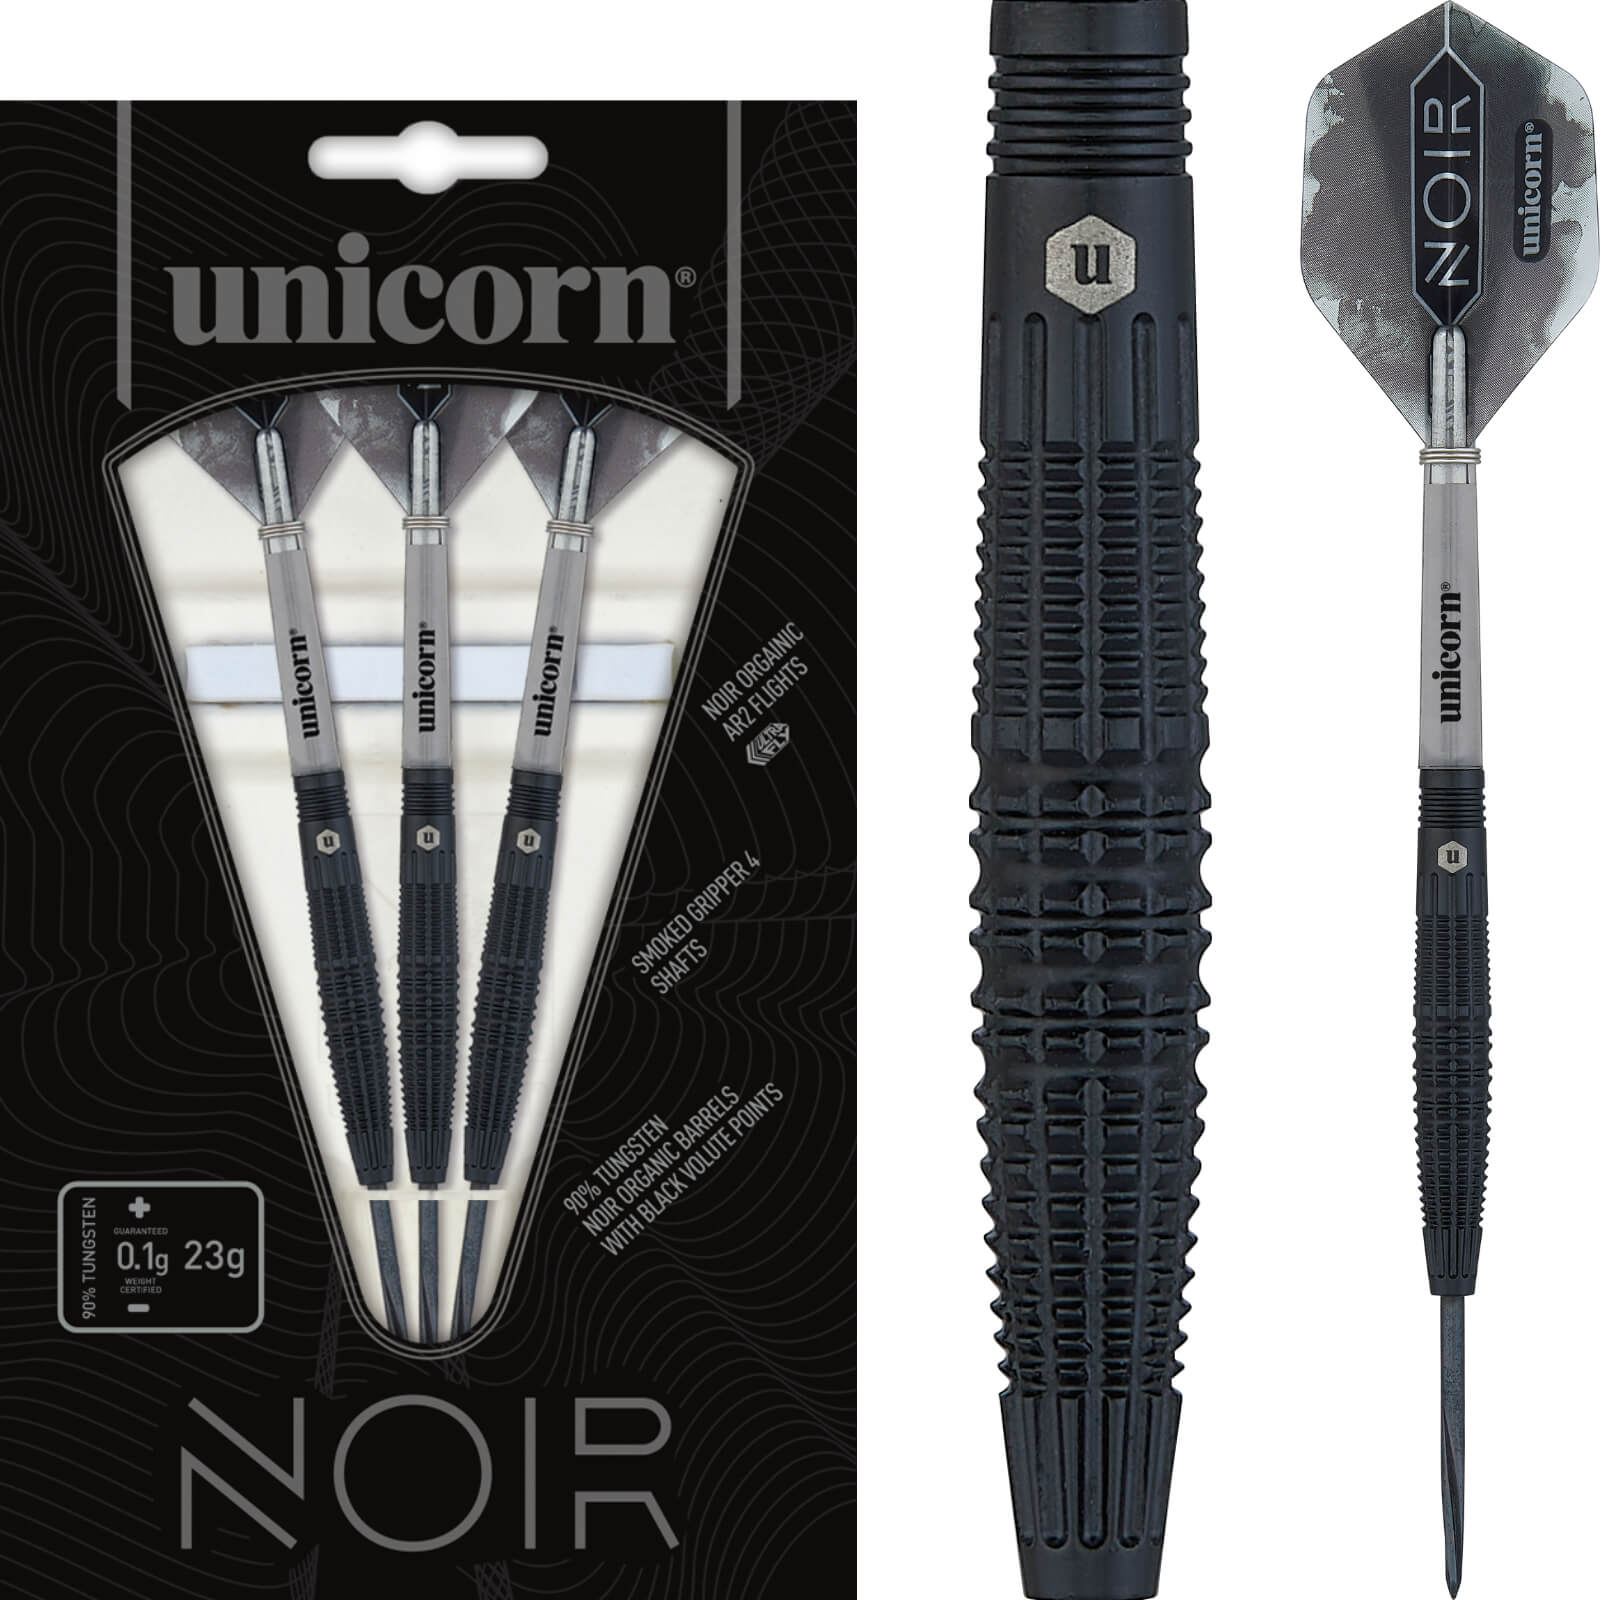 Darts - Unicorn - Noir Style 2 Darts - Steel Tip - 90% Tungsten - 21g 23g 25g 